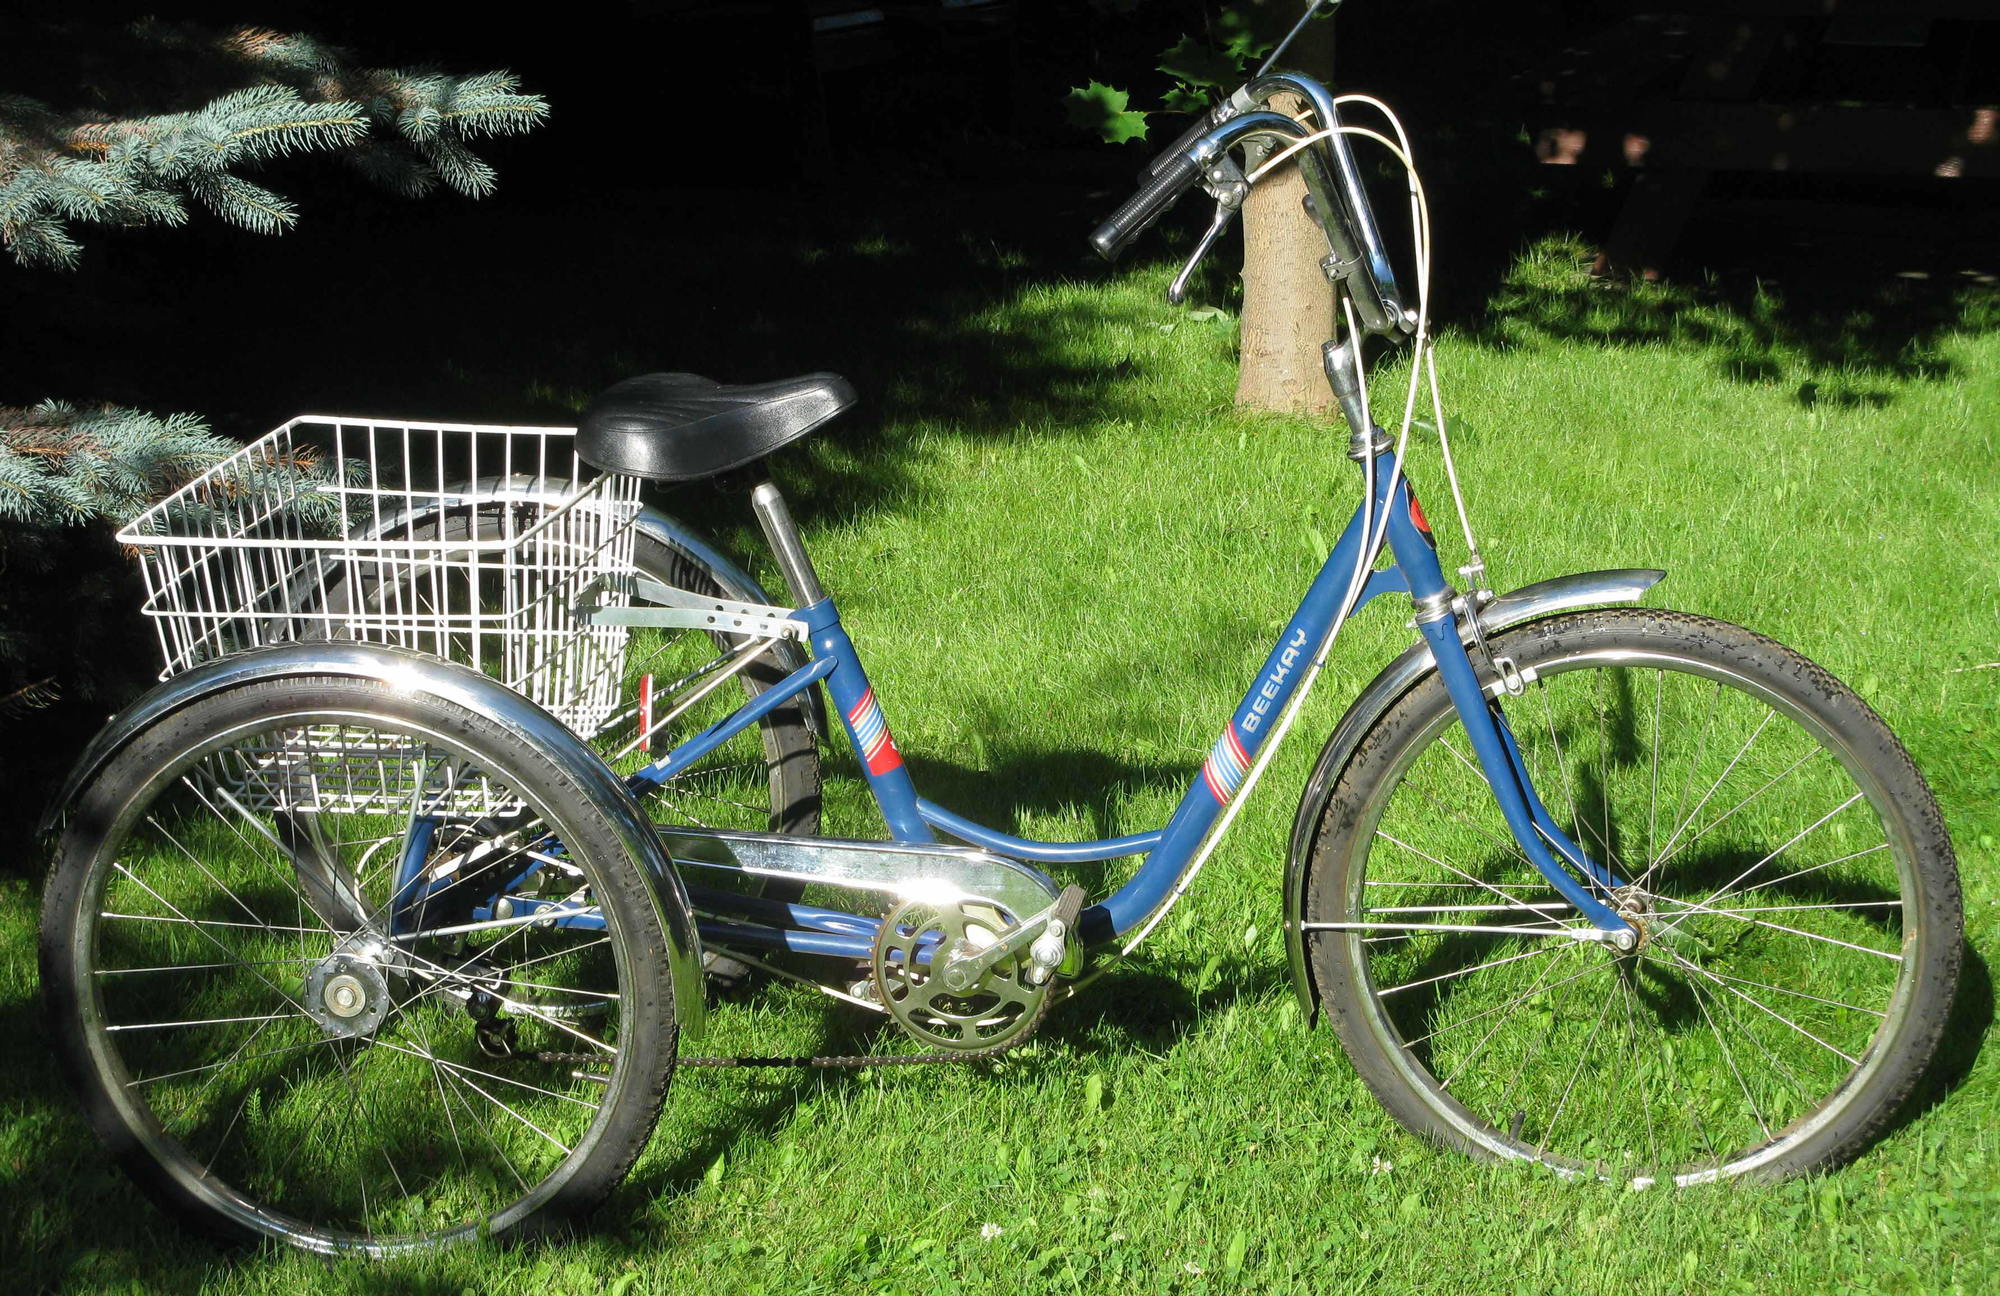 sears tricycle vintage